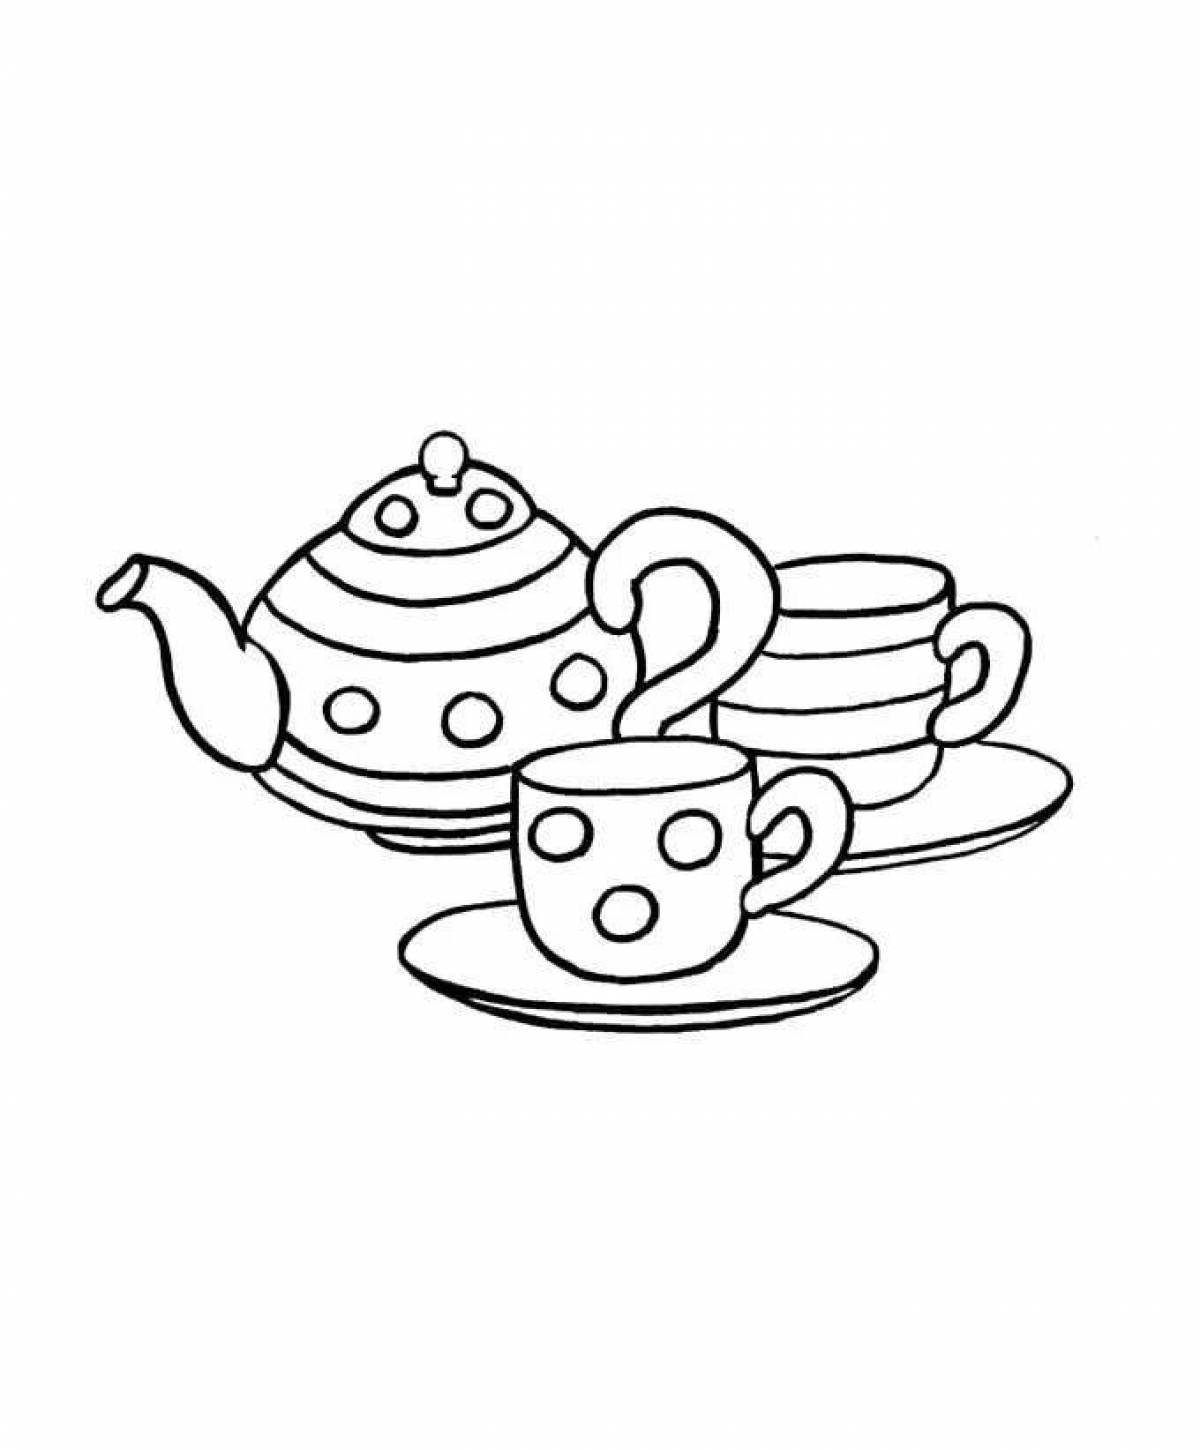 Калейдоскопический чайник и чашка раскраски